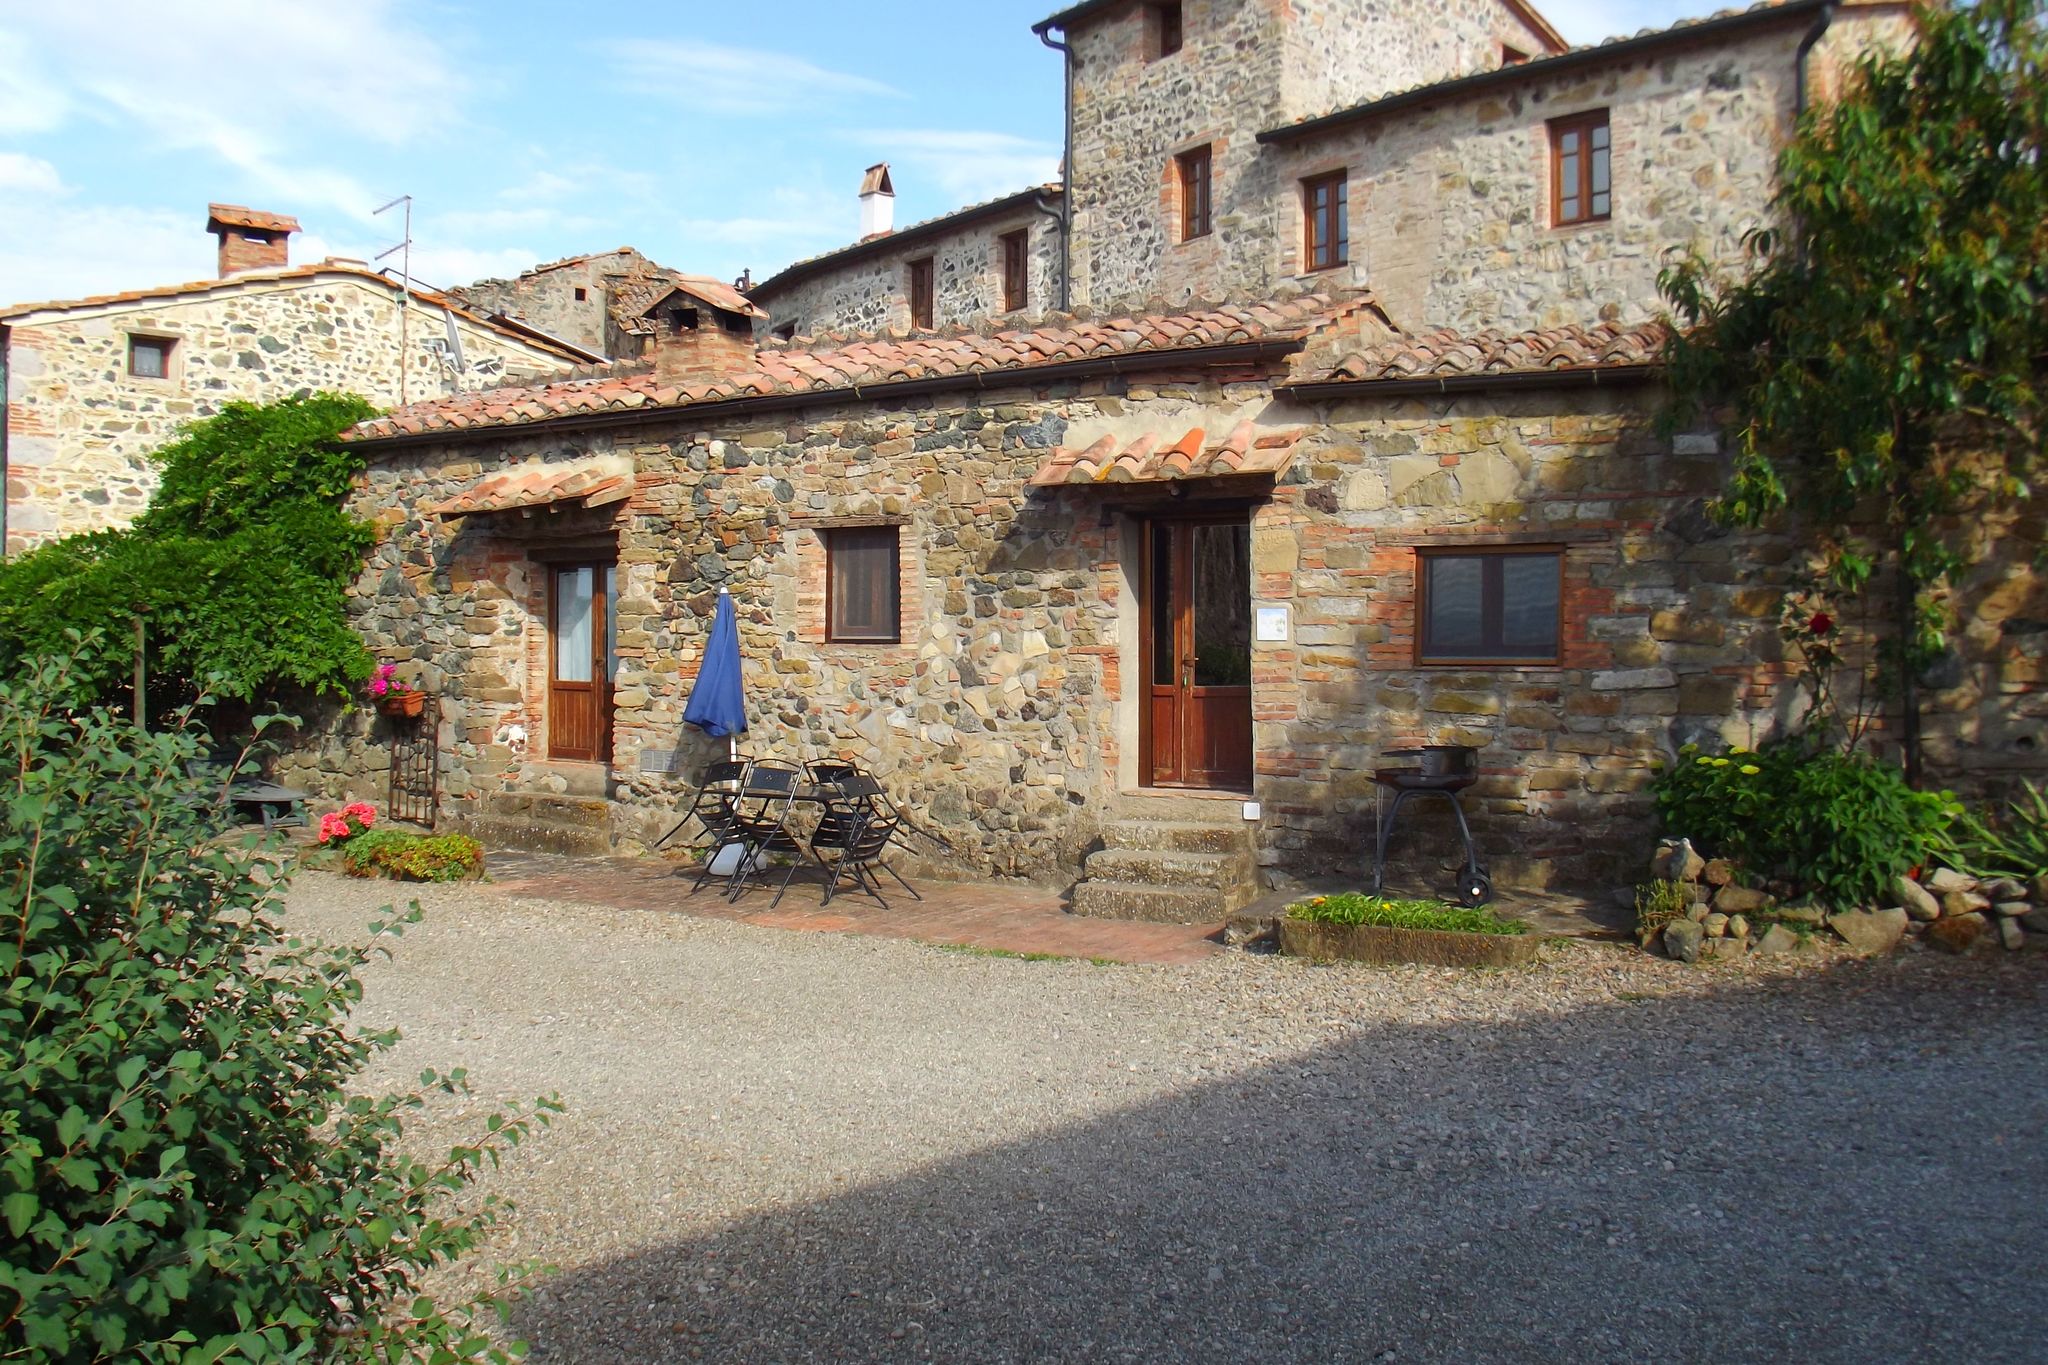 Boerderij-appartement in een middeleeuws dorpje in de Toscaanse heuvels